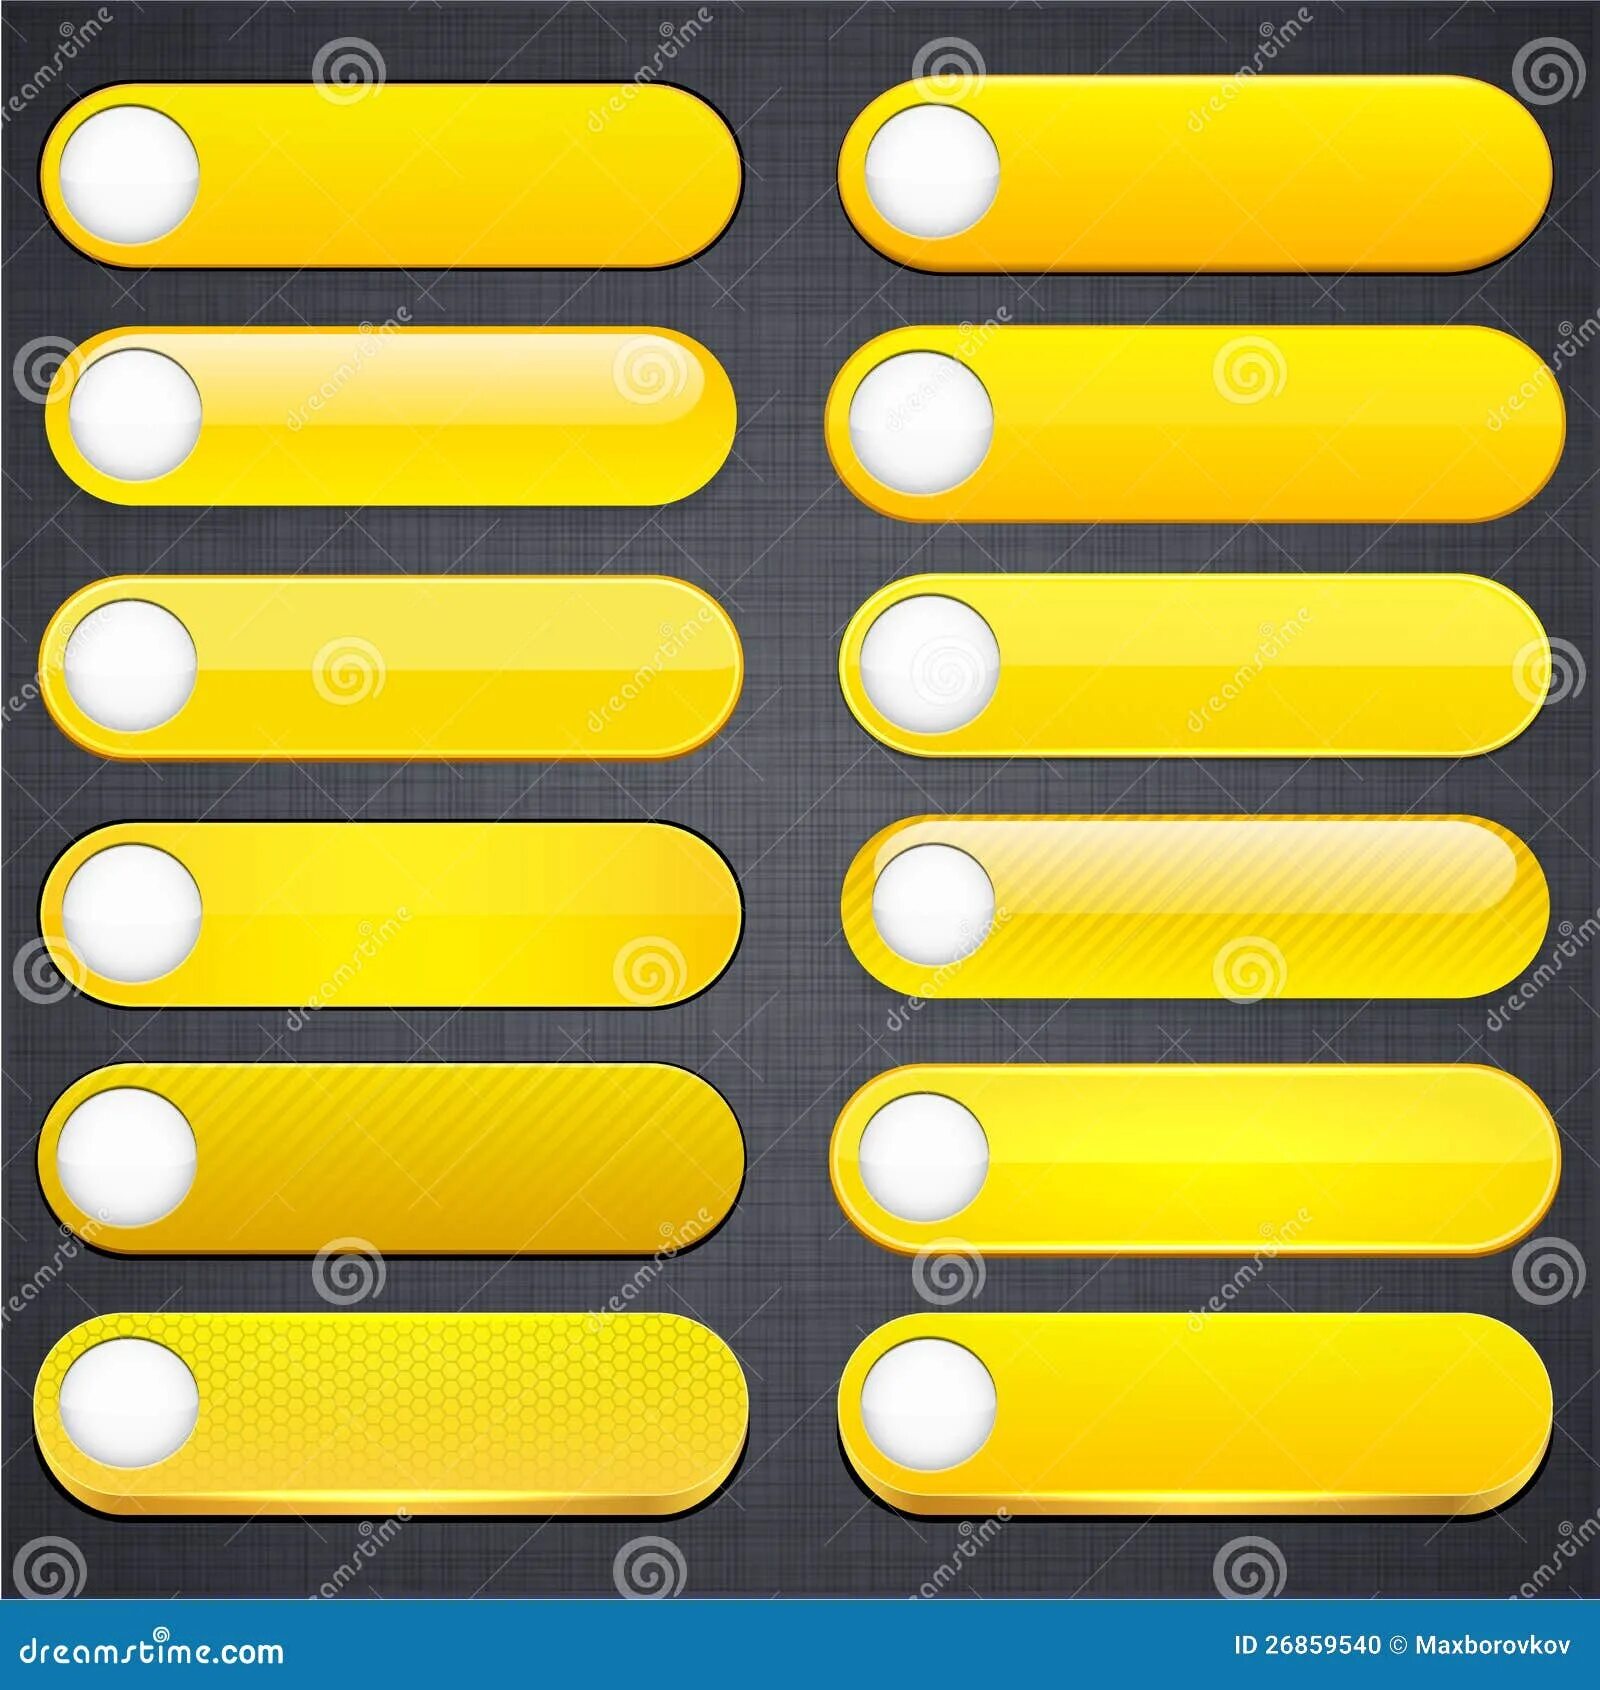 Нажать желтую кнопку. Желтая кнопка. Желтая кнопка для сайта. Большие желтые кнопки для сайта. Горизонтальные кнопки желтая.